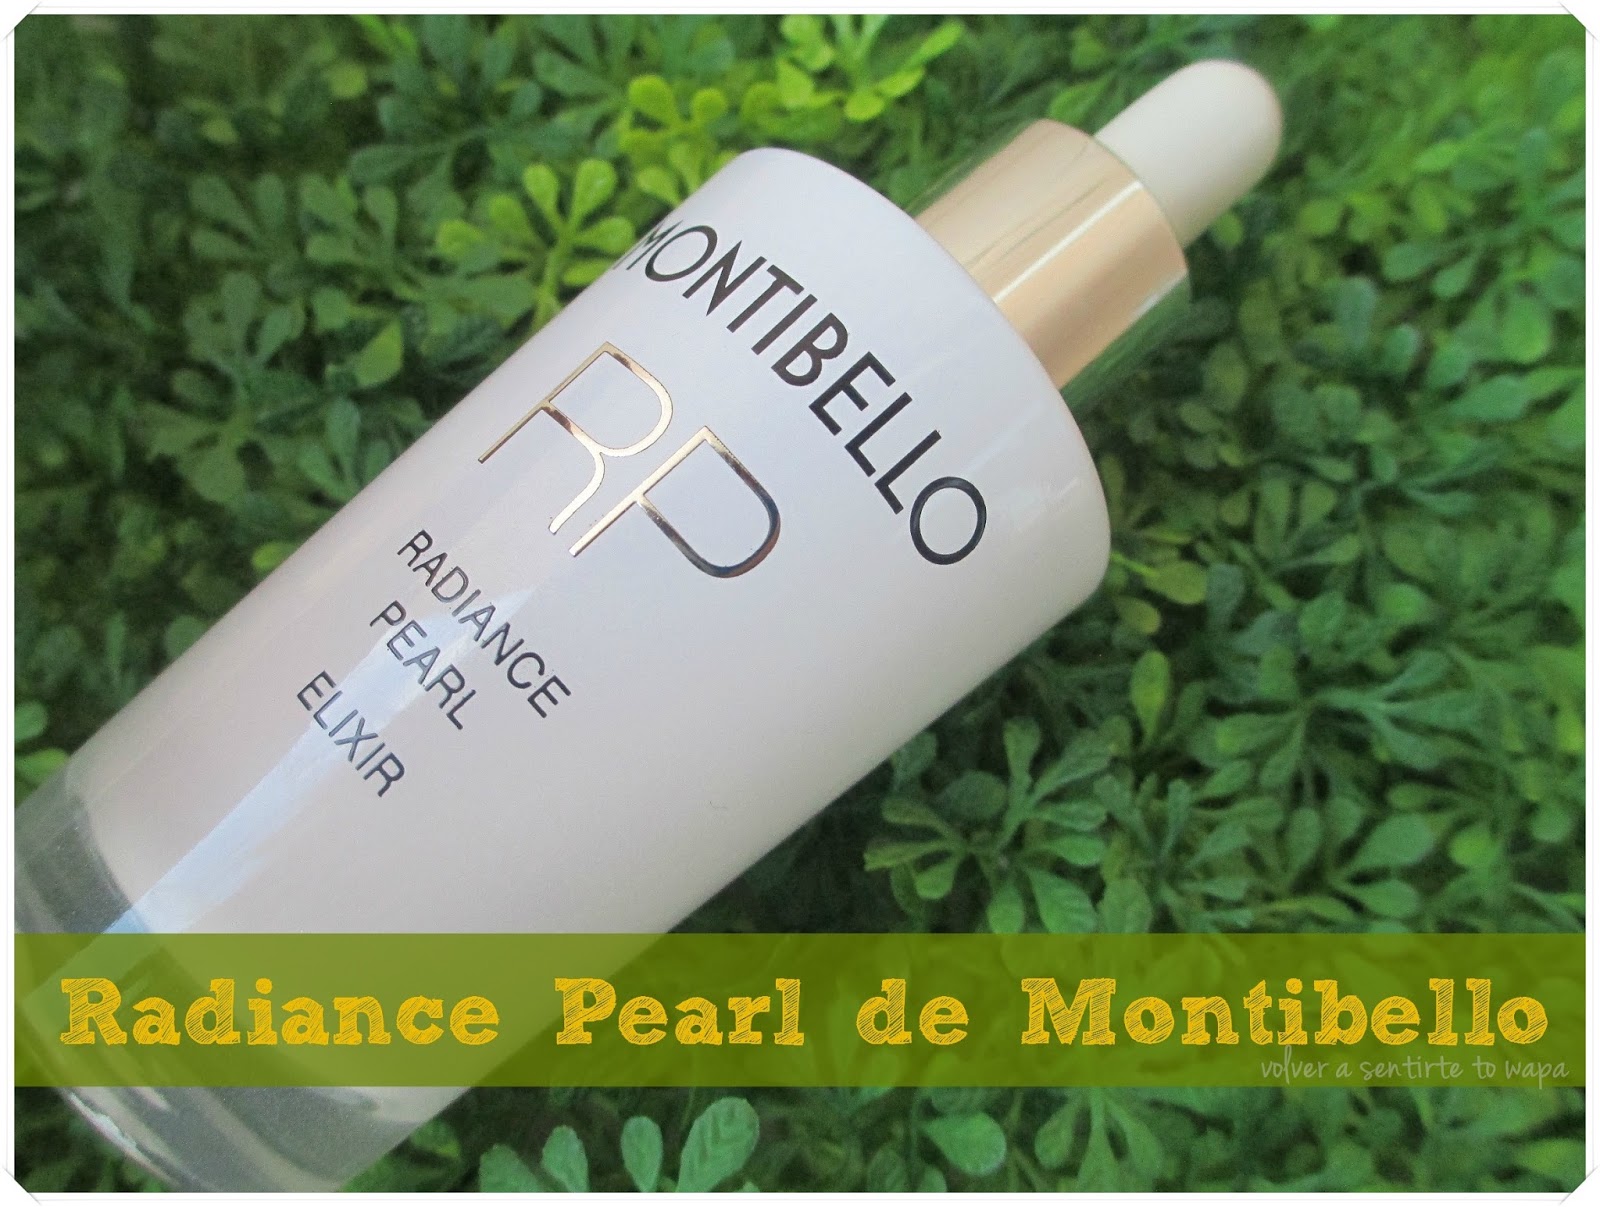 Radiance Pearl Elixir de Montibello, dando luz y vitalidad al rostro